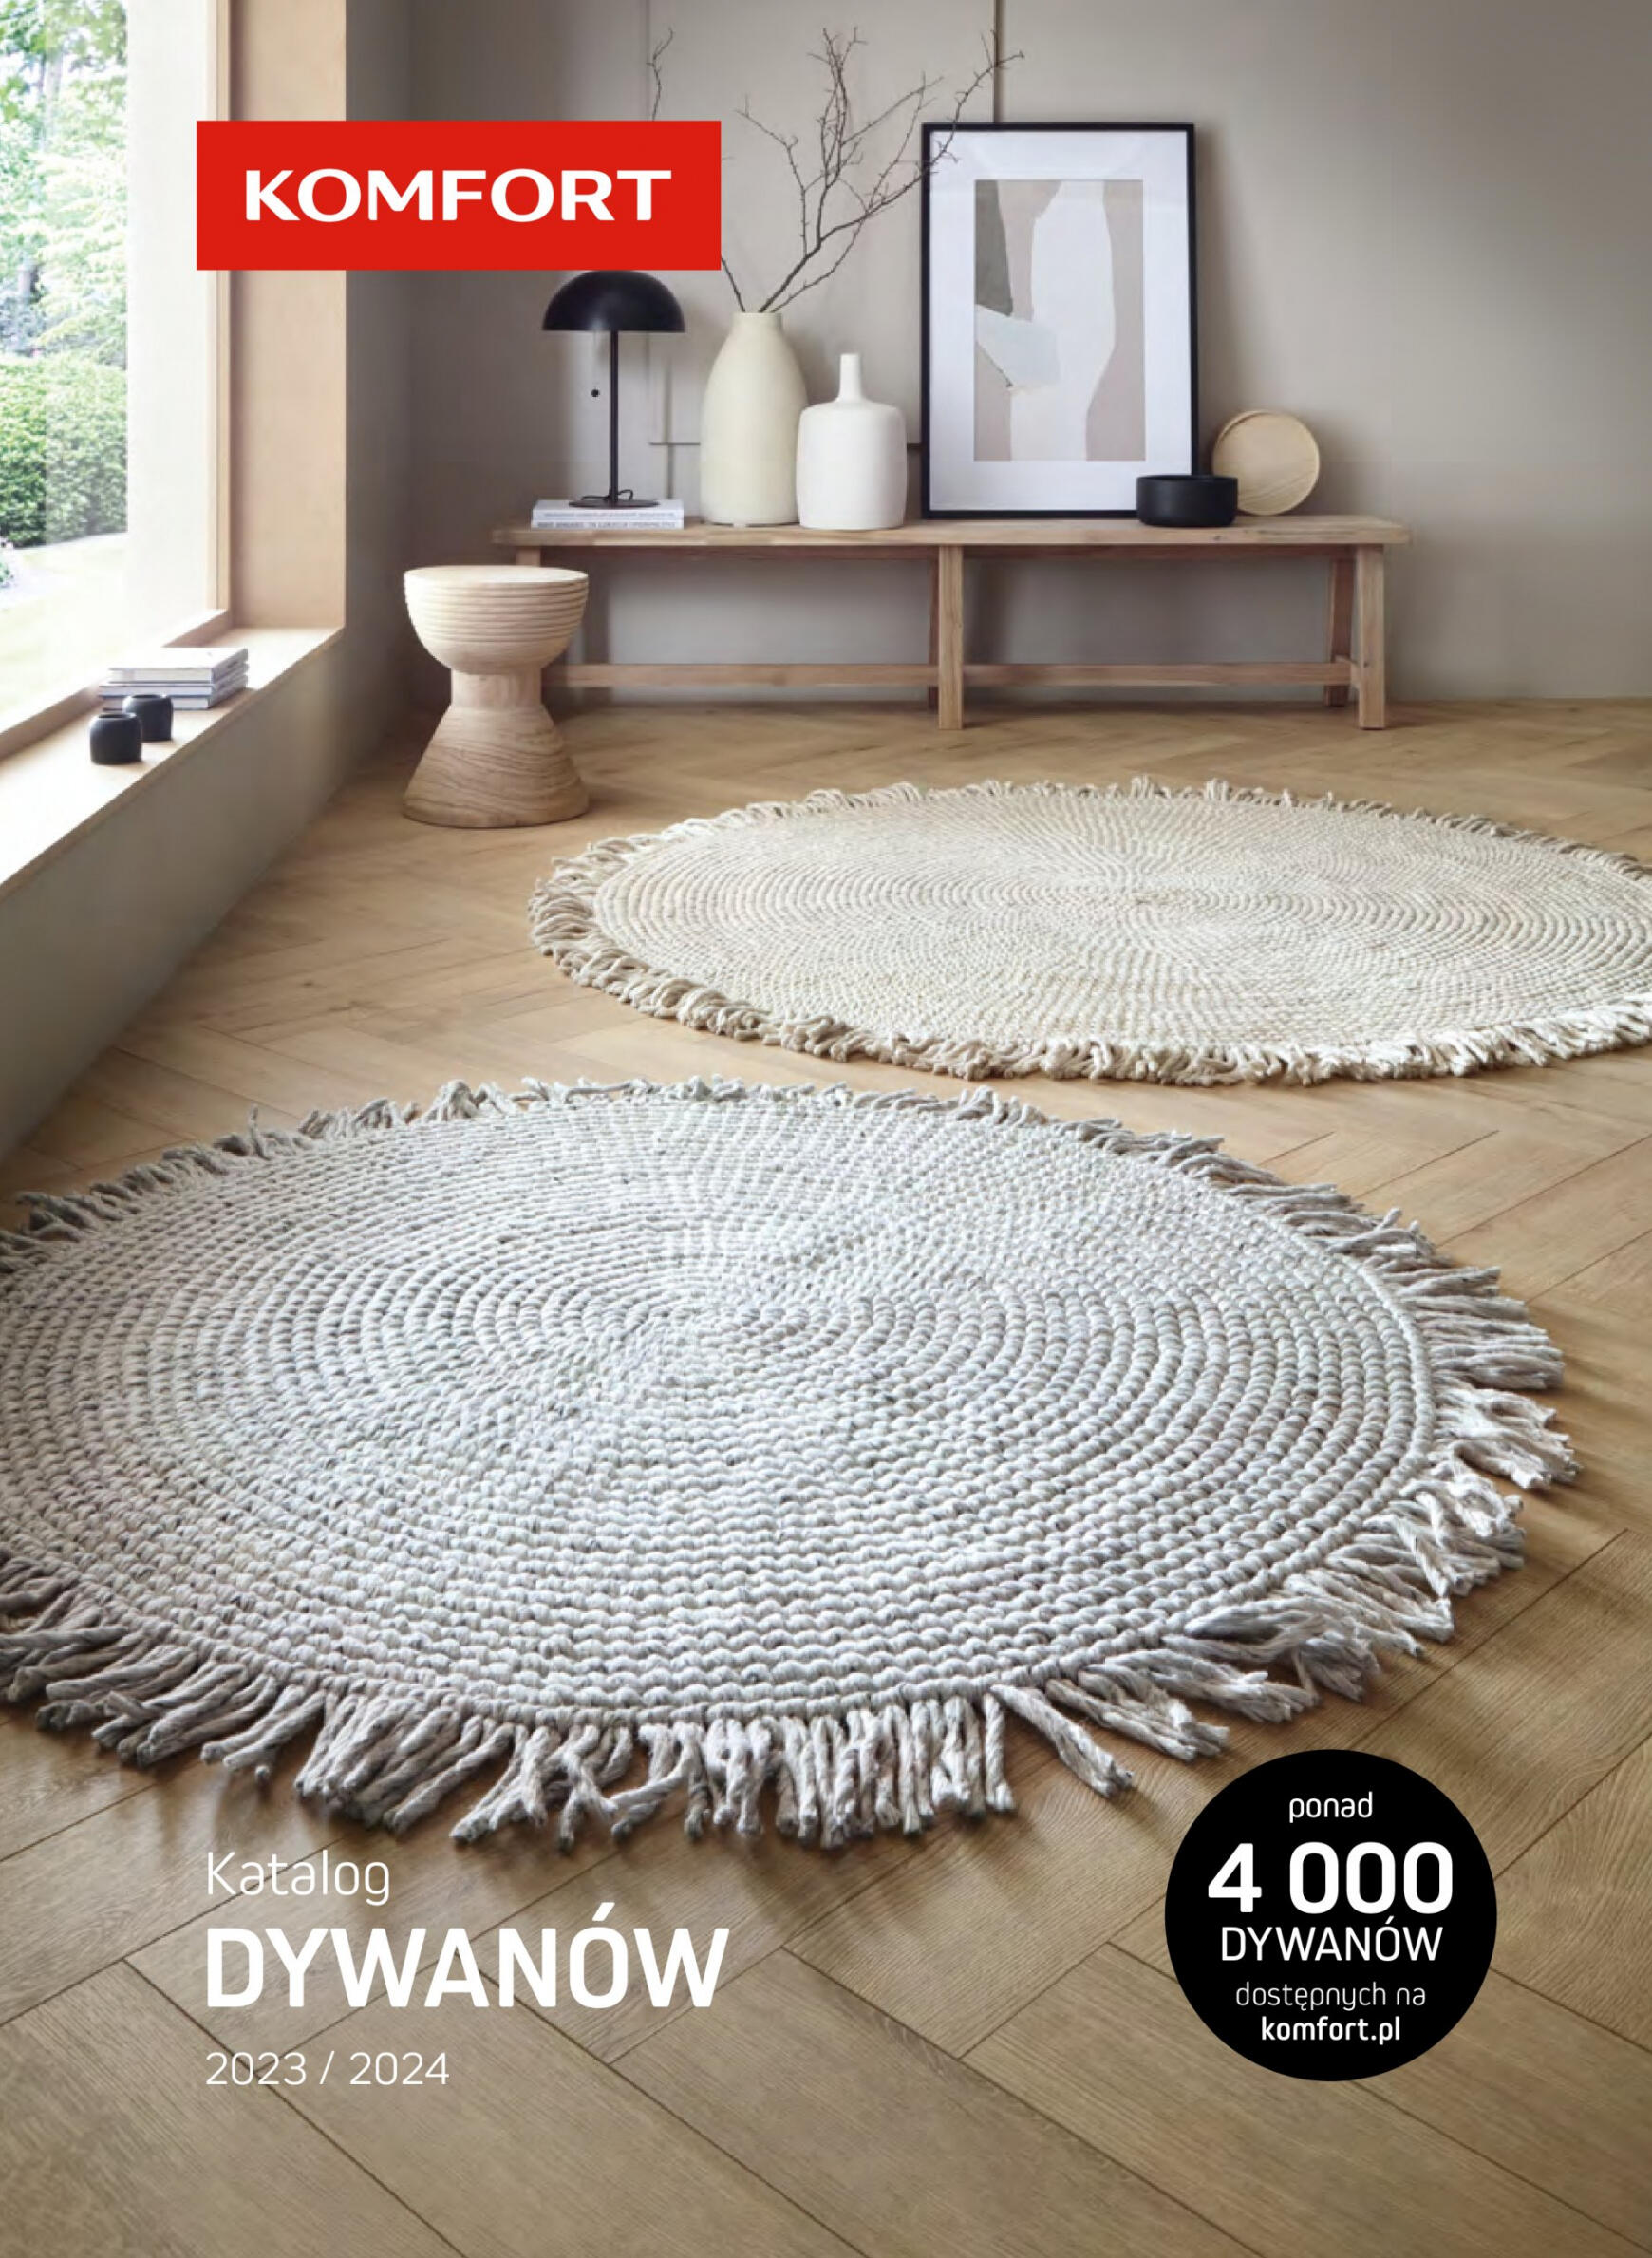 komfort - Komfort - Katalog dywany 2